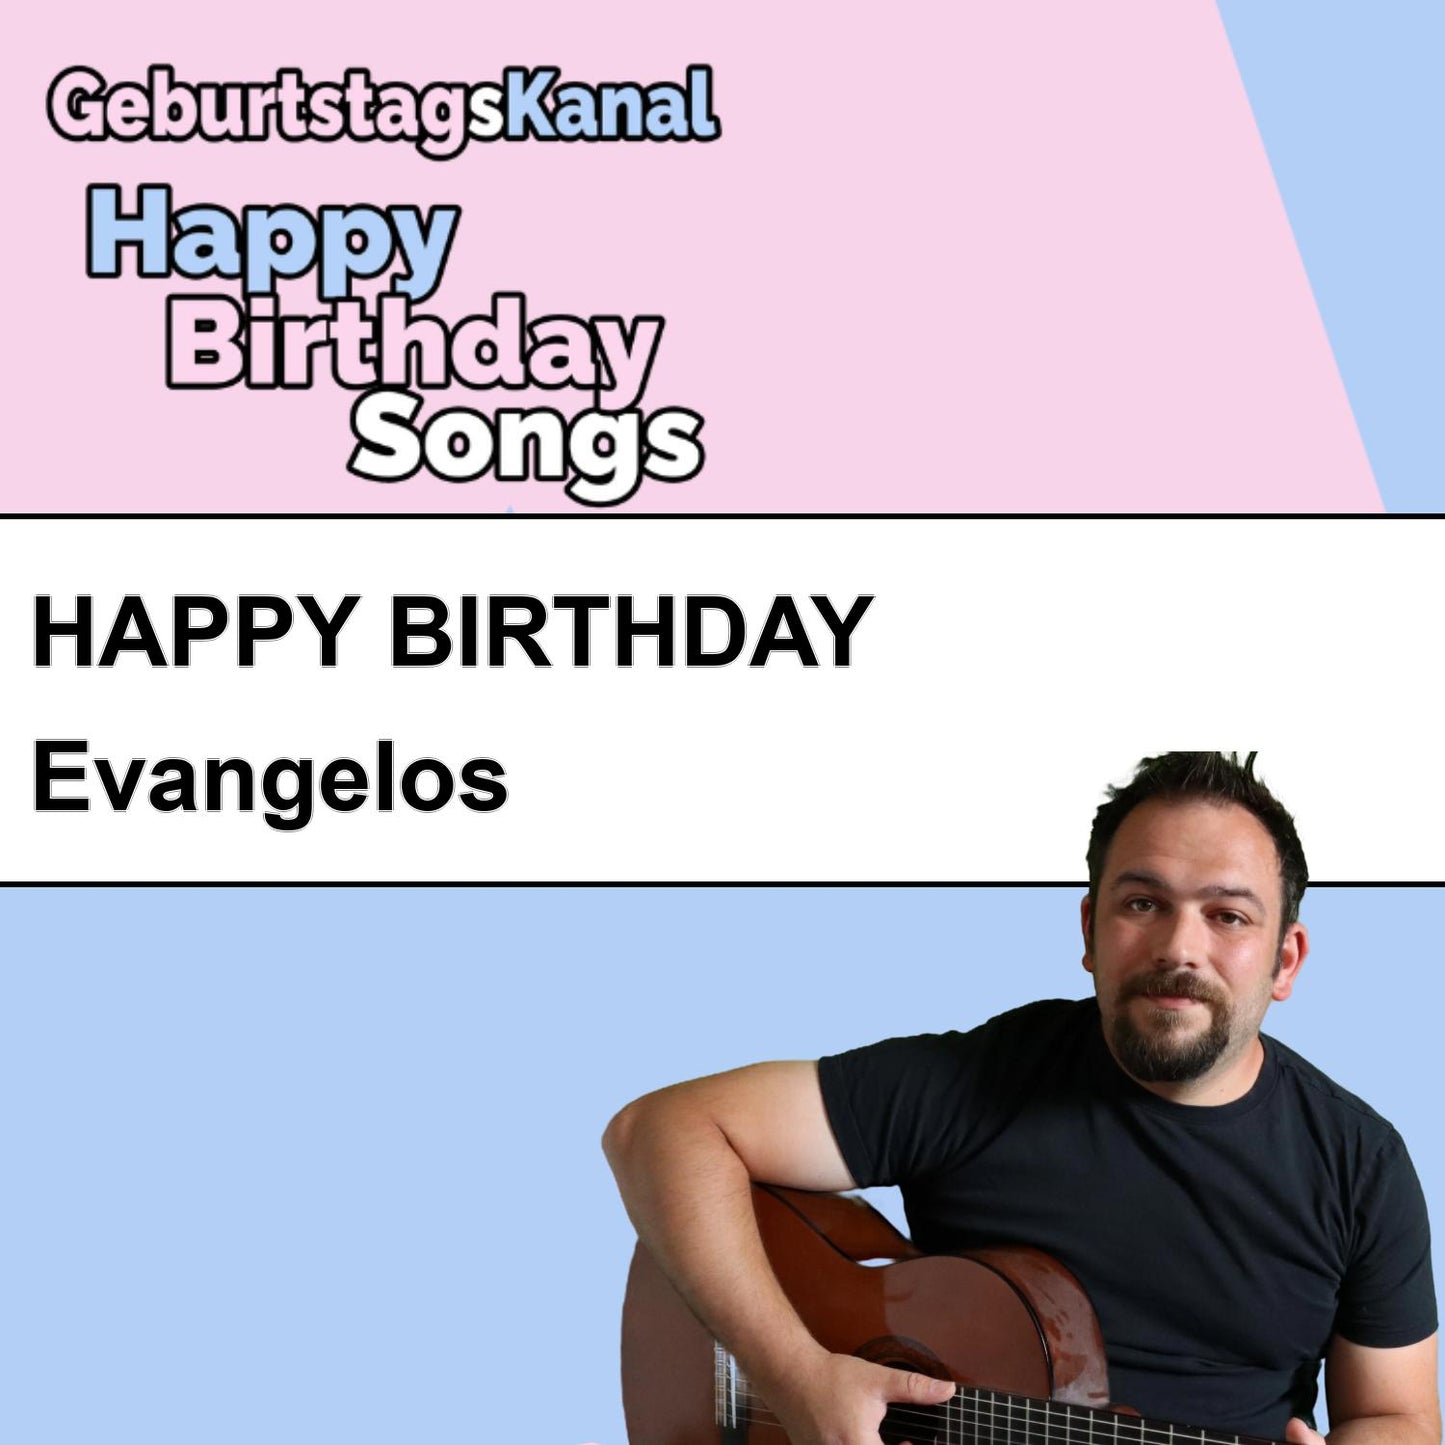 Produktbild Happy Birthday to you Evangelos mit Wunschgrußbotschaft